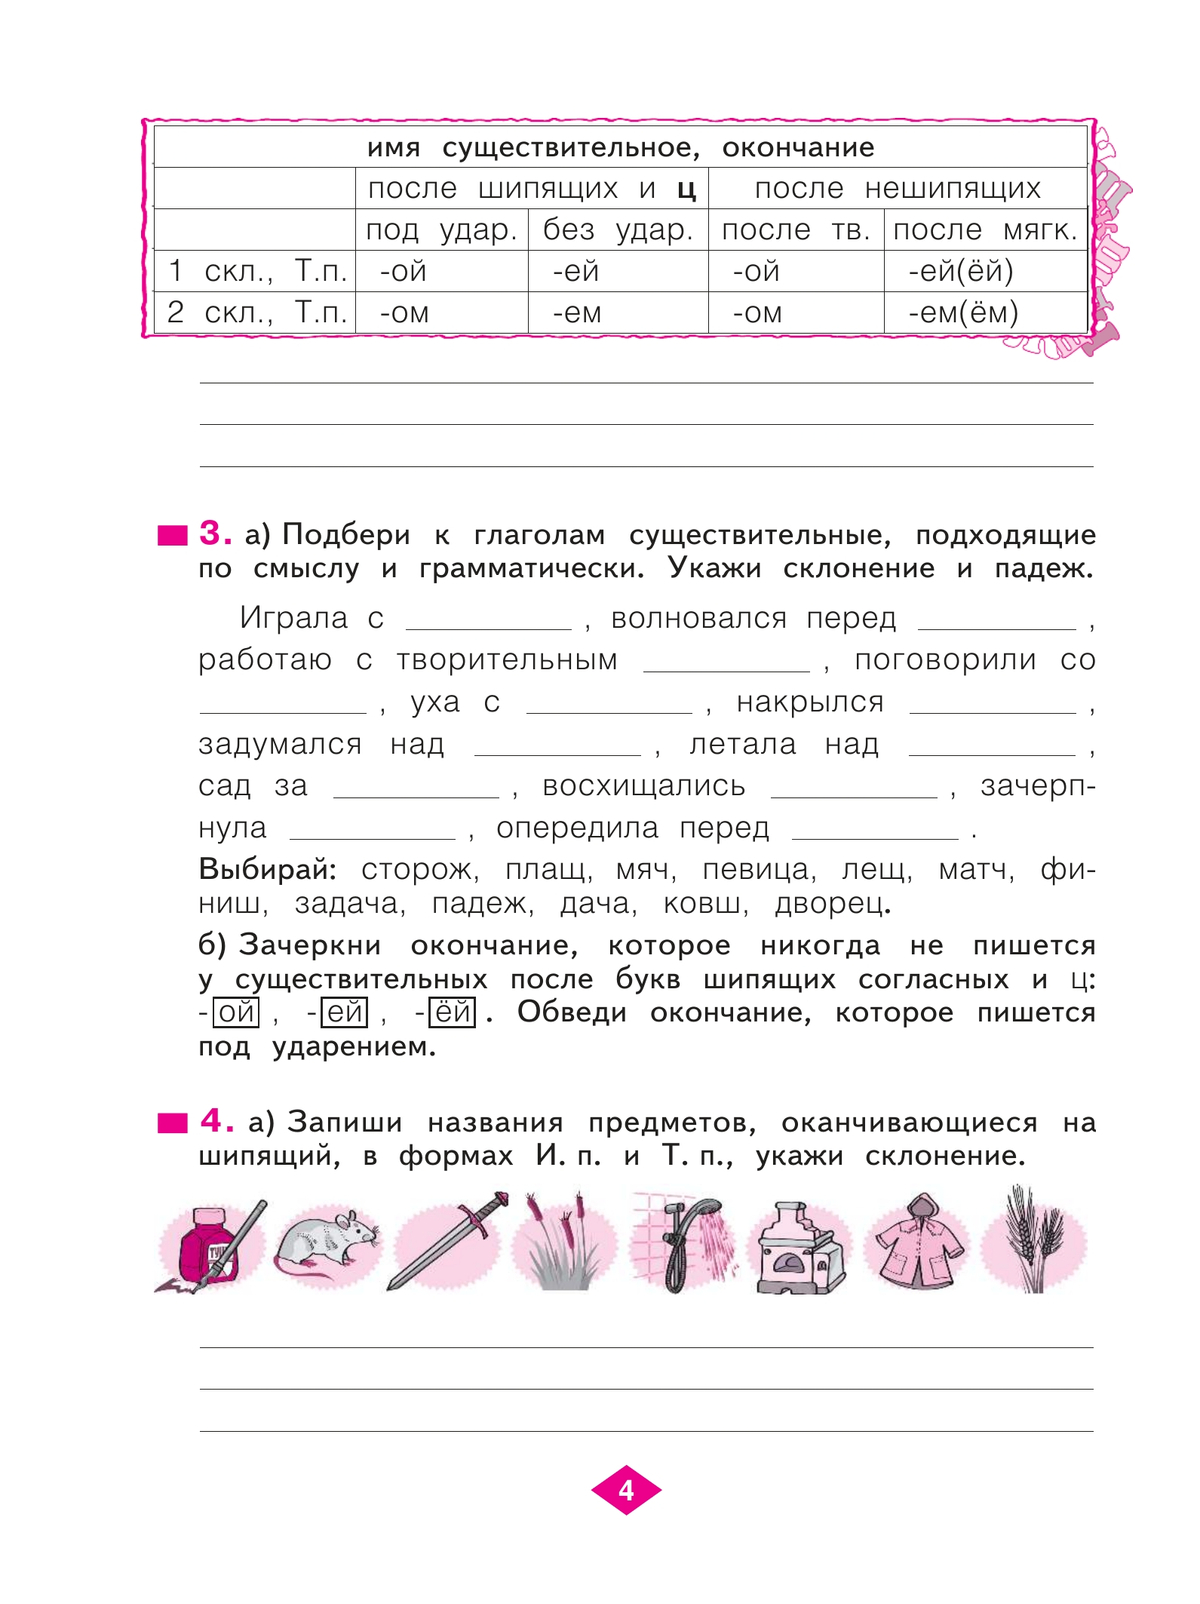 Русский язык. Рабочая тетрадь. 3 класс. В 4-х частях. Часть 4 6